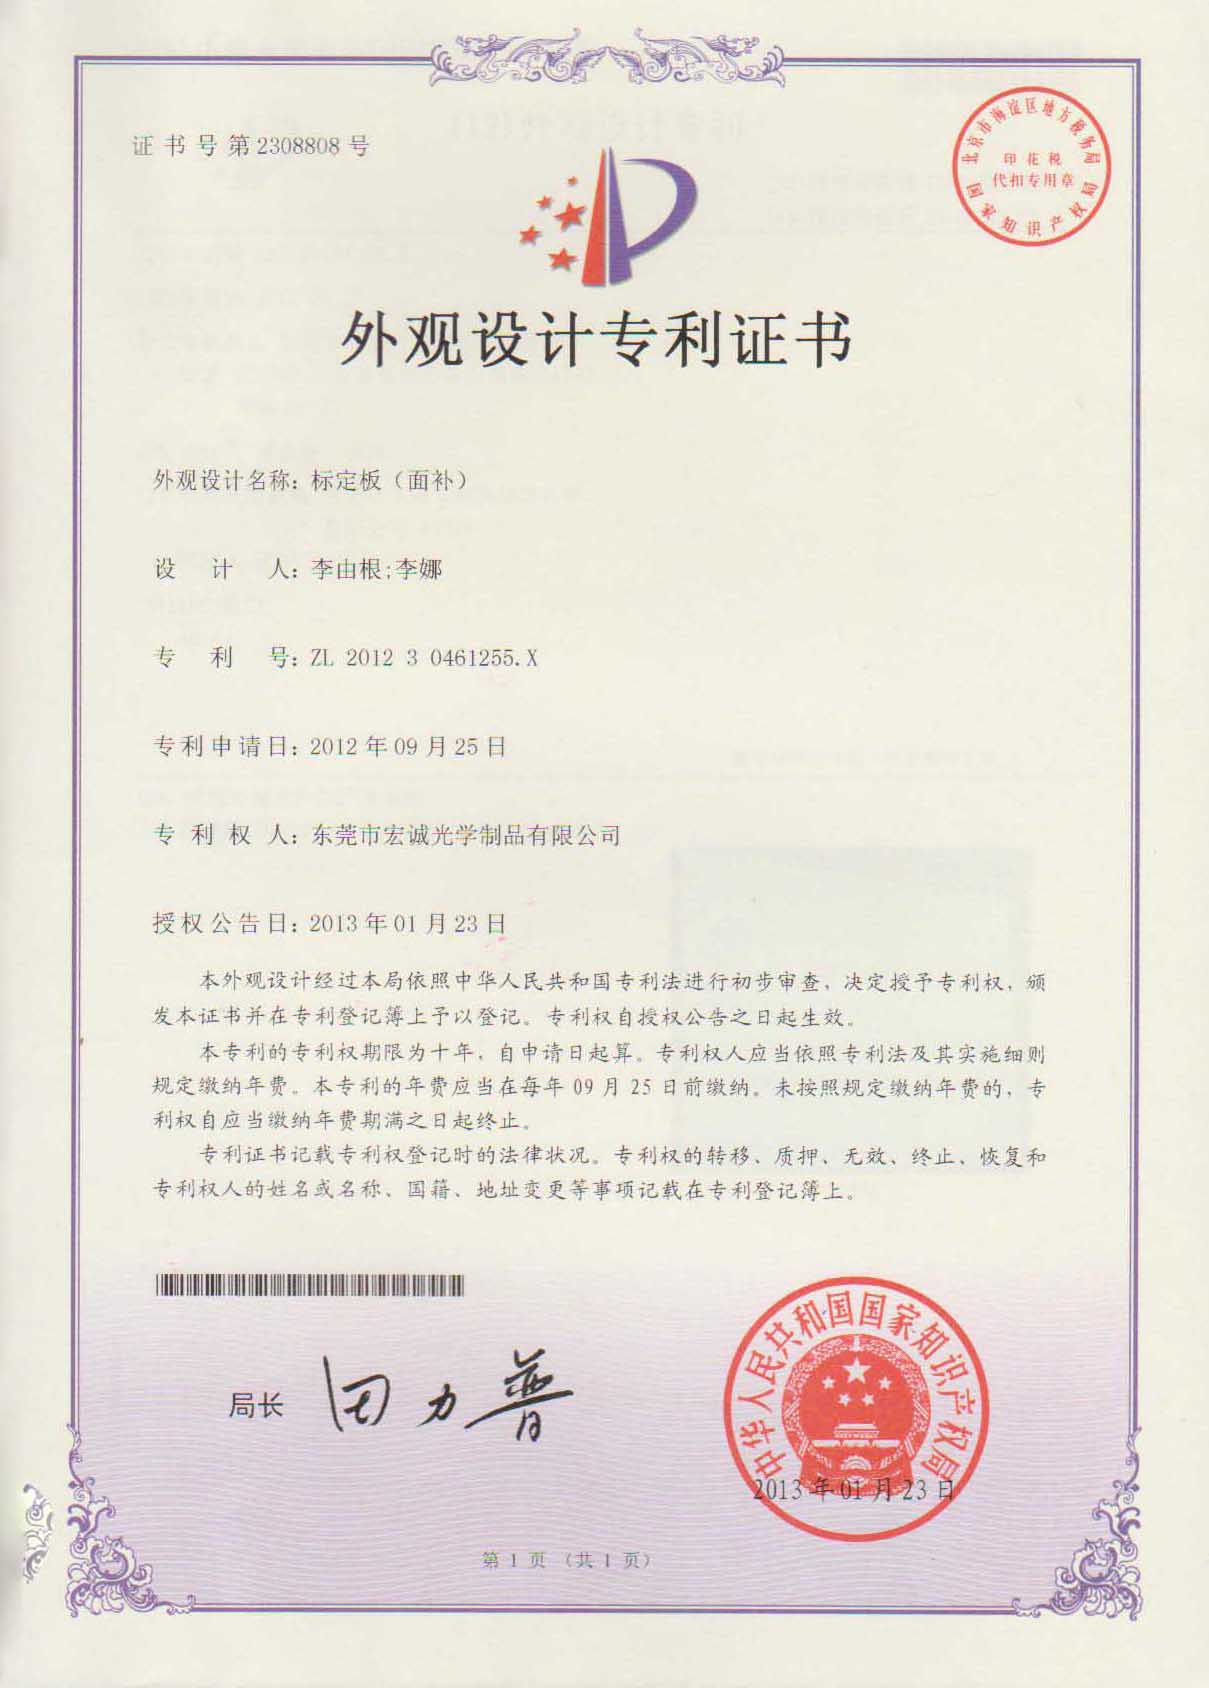 标定板外观设计专利证书-东莞市宏诚光学制品有限公司